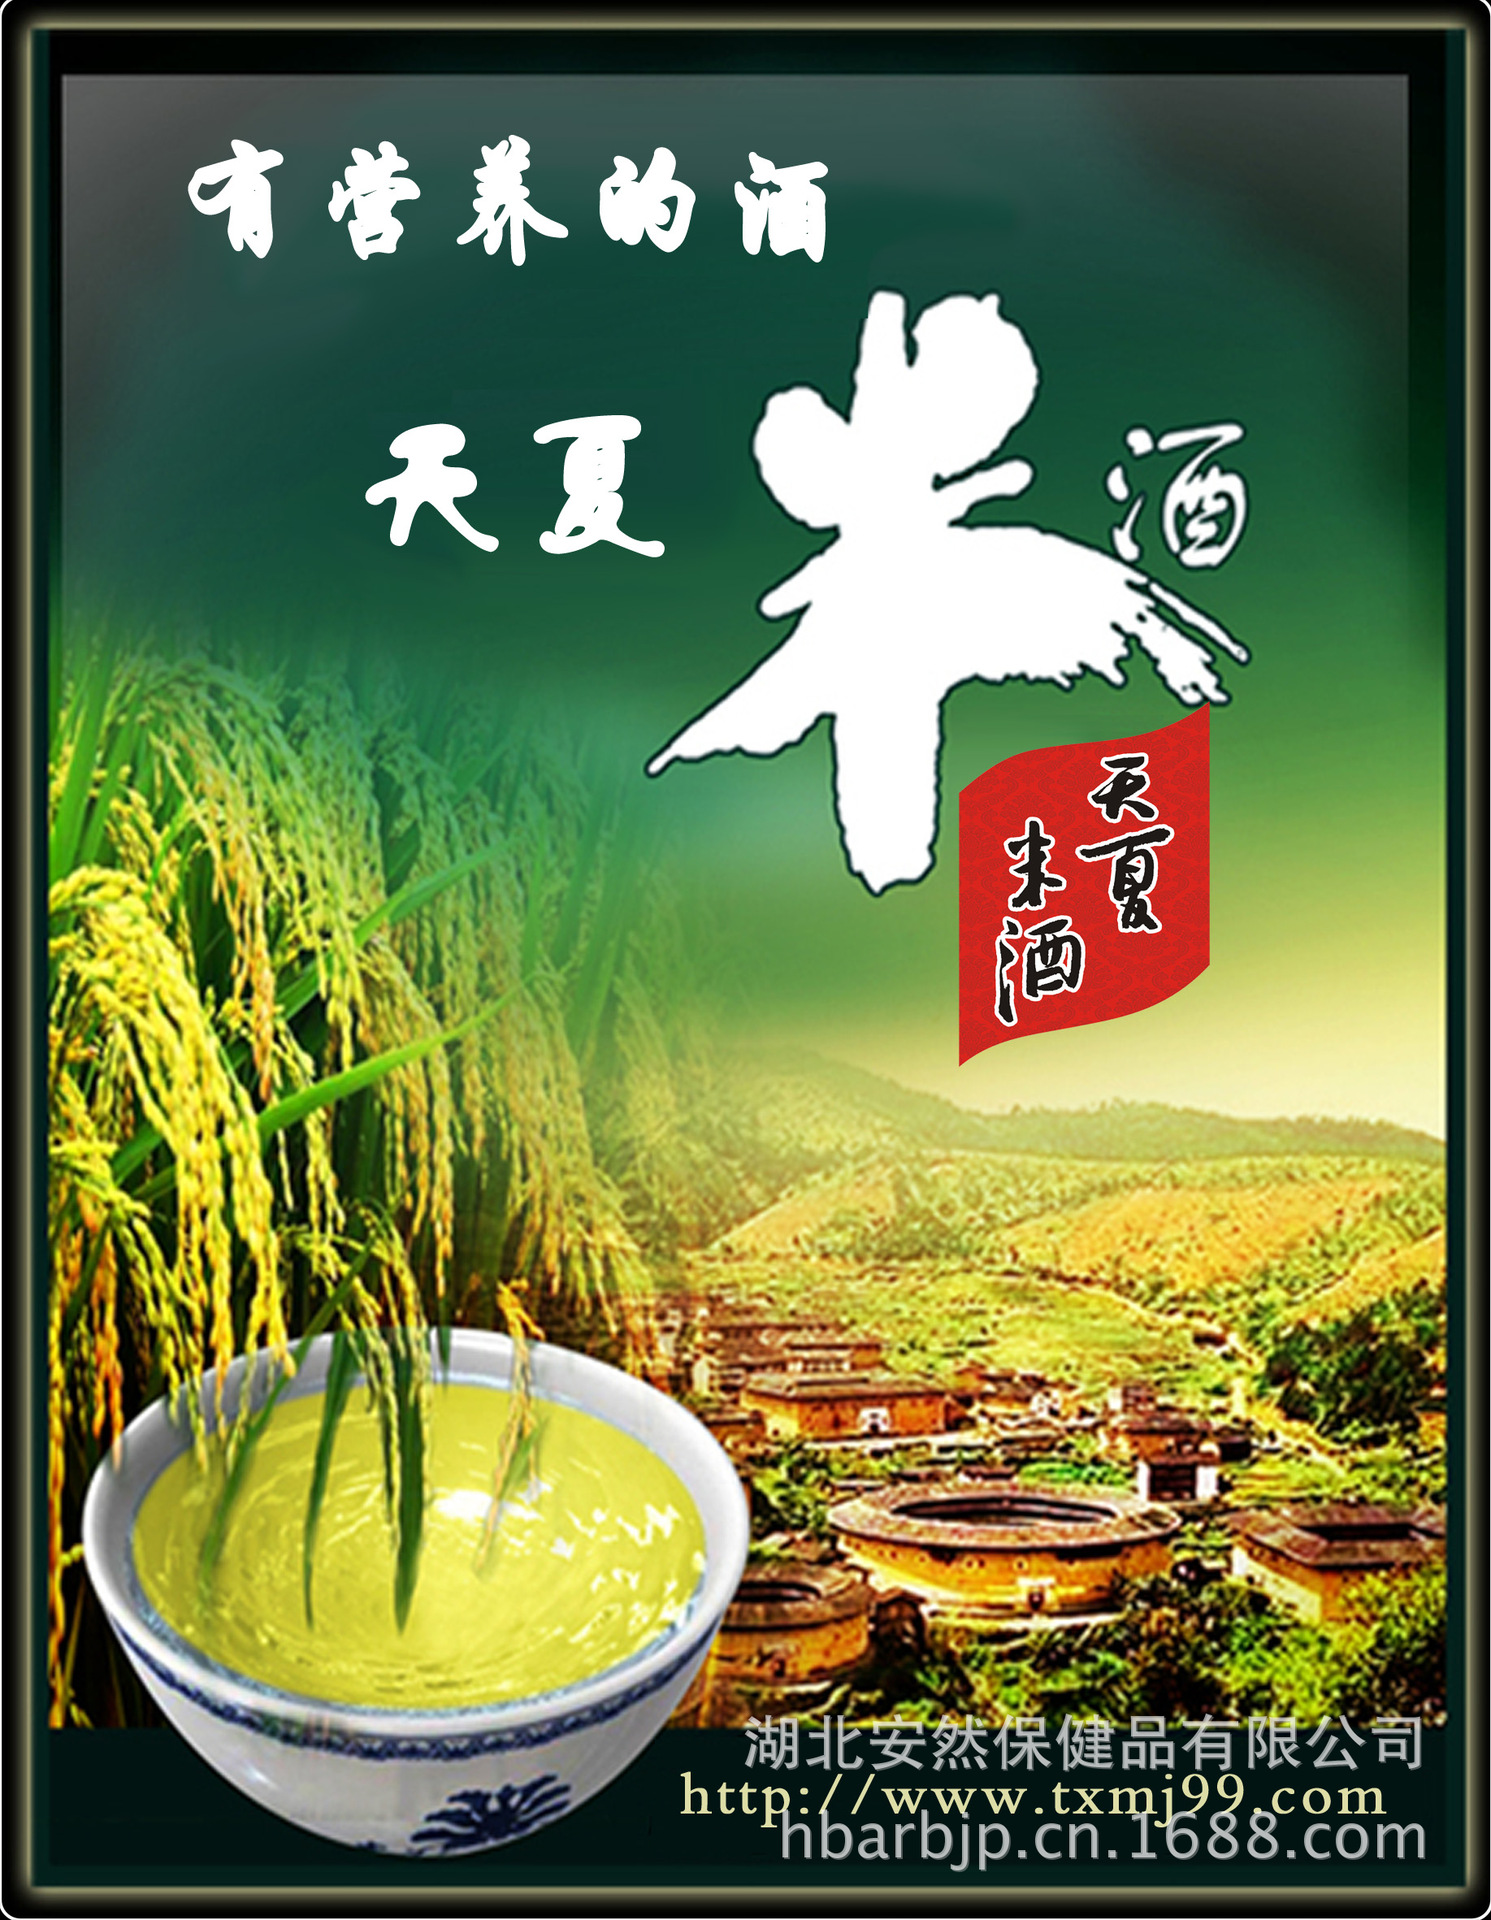 (6)原汁型清米酒适合于洒店或家庭餐饮直接饮用,热饮或冷饮更有风味